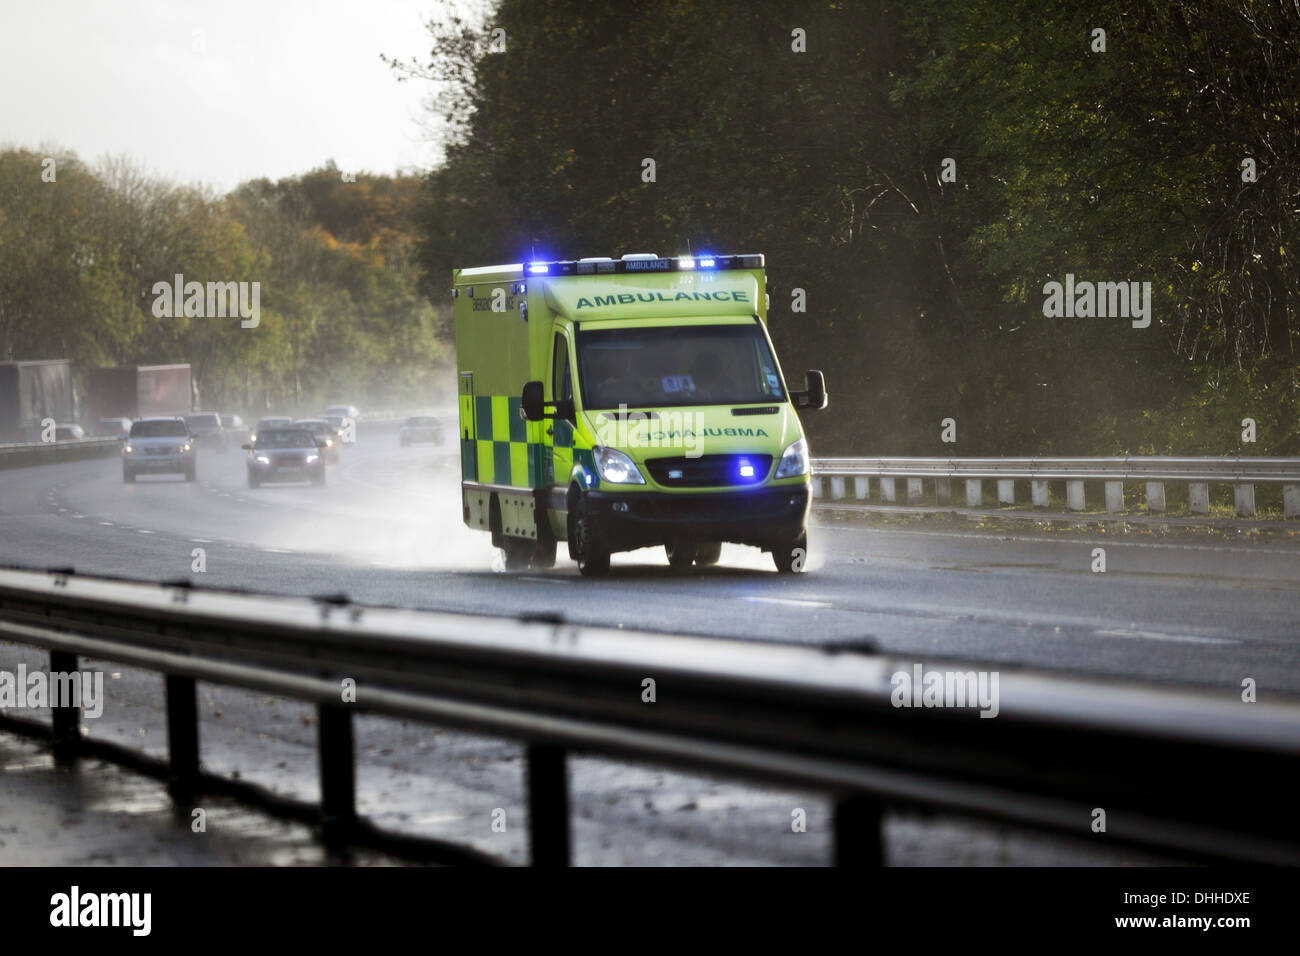 Ambulance britannique sur une autoroute au Royaume-Uni Banque D'Images